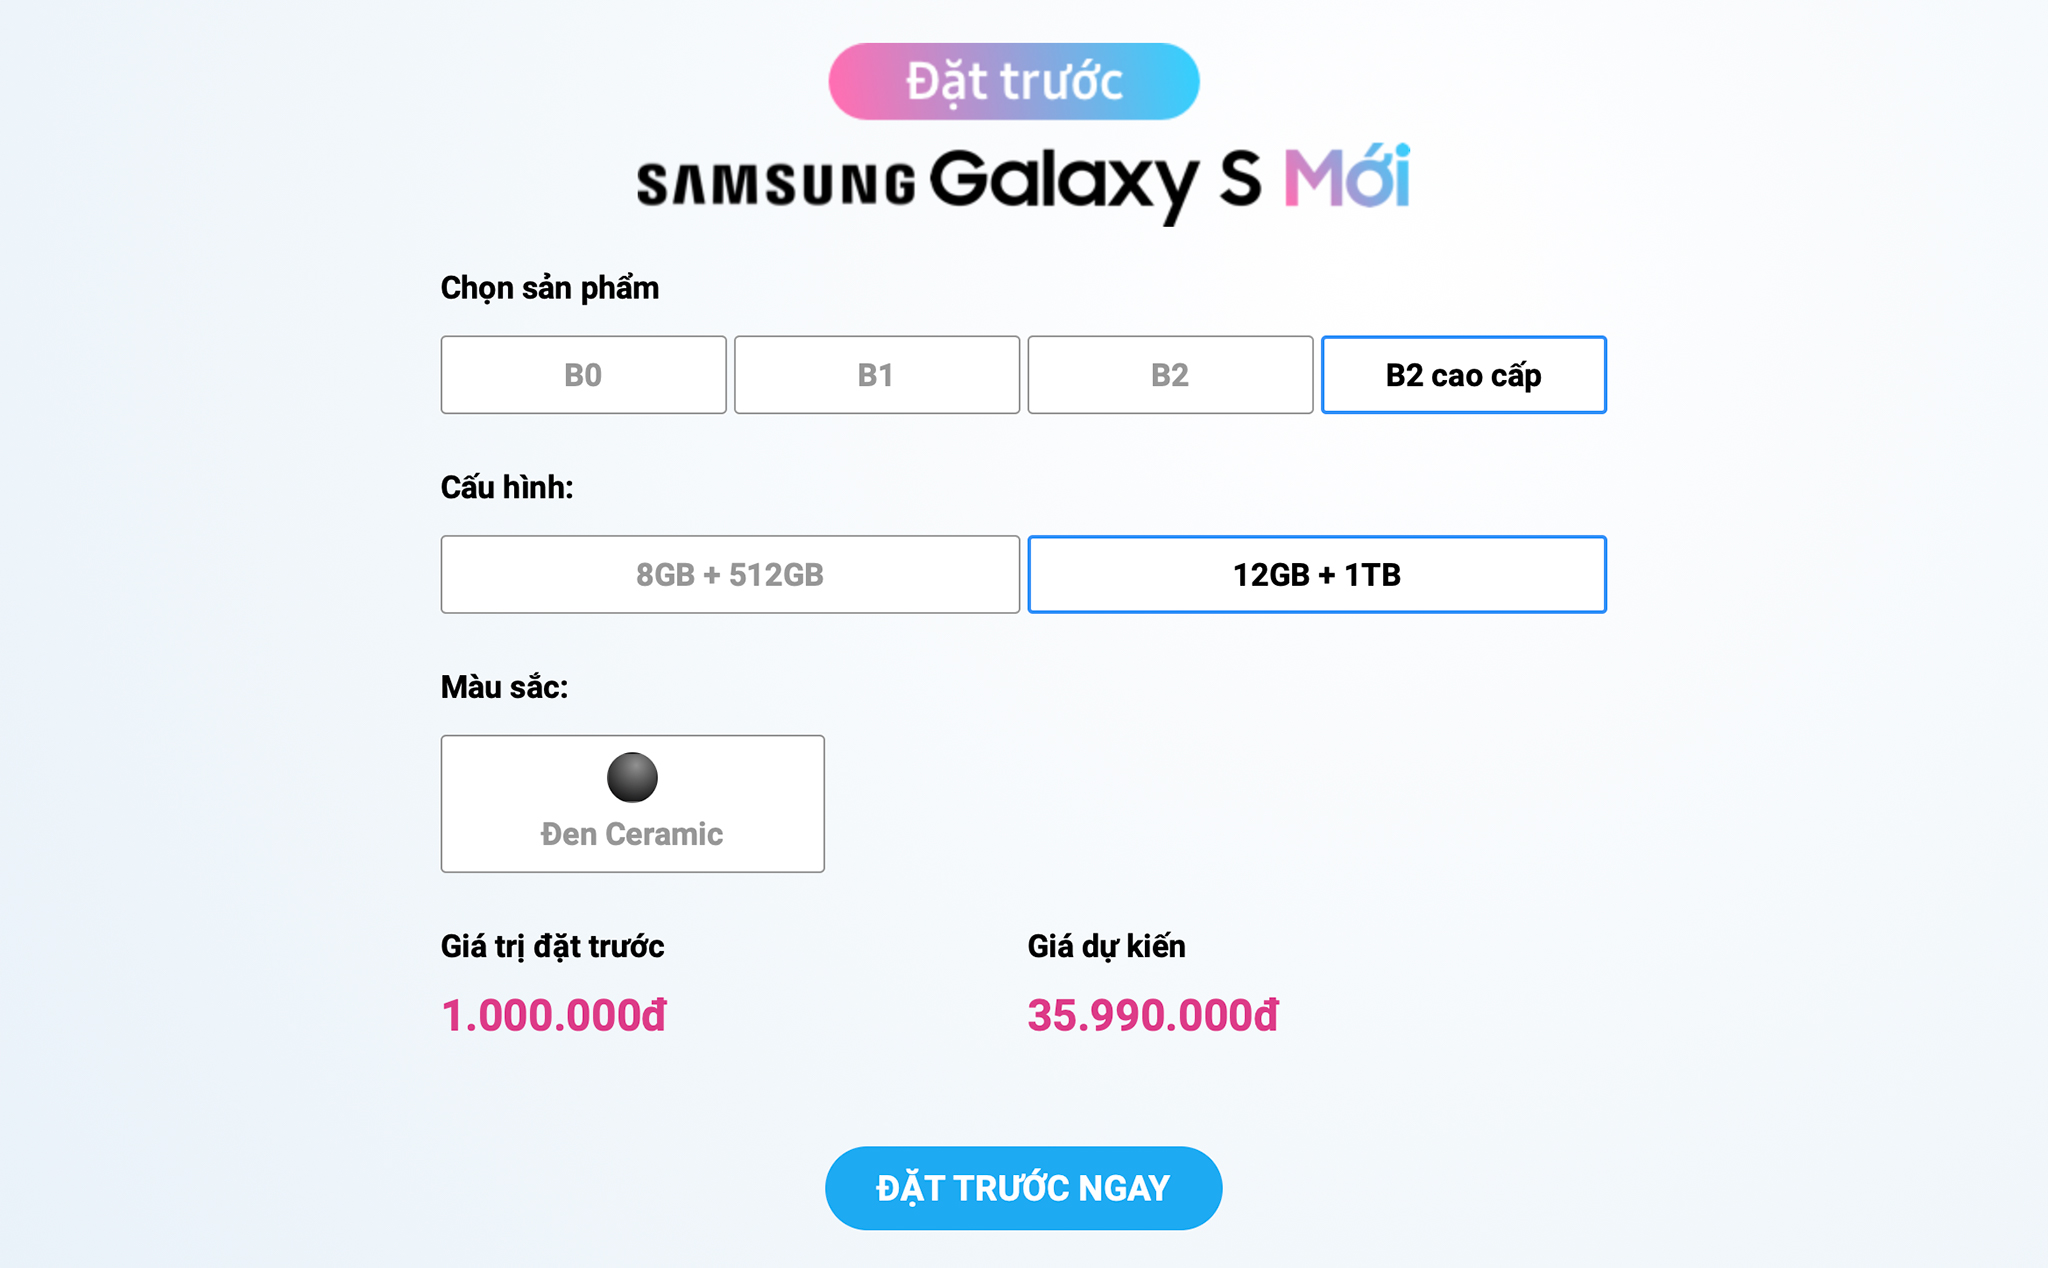 Galaxy S10 cho đặt hàng tại Việt Nam từ 11/2, giá dự kiến cao nhất 36 triệu cho bản RAM 12GB/ 1TB